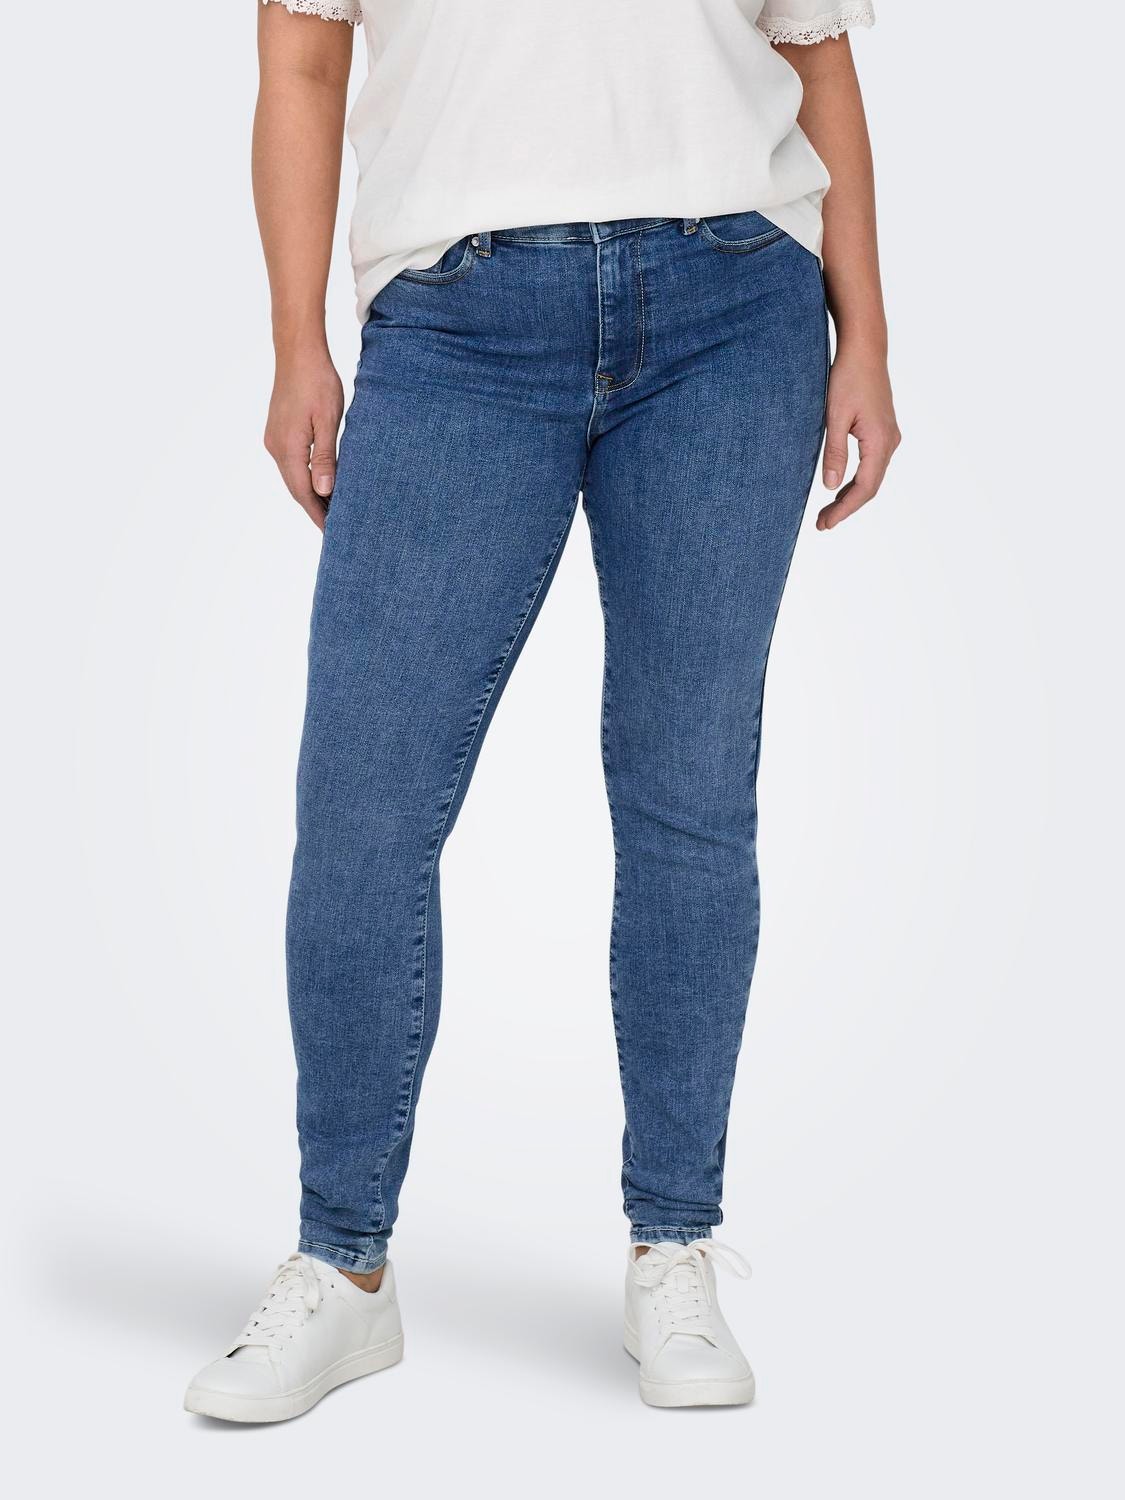 ONLY Skinny Fit Middels høy midje Jeans -Medium Blue Denim - 15314016